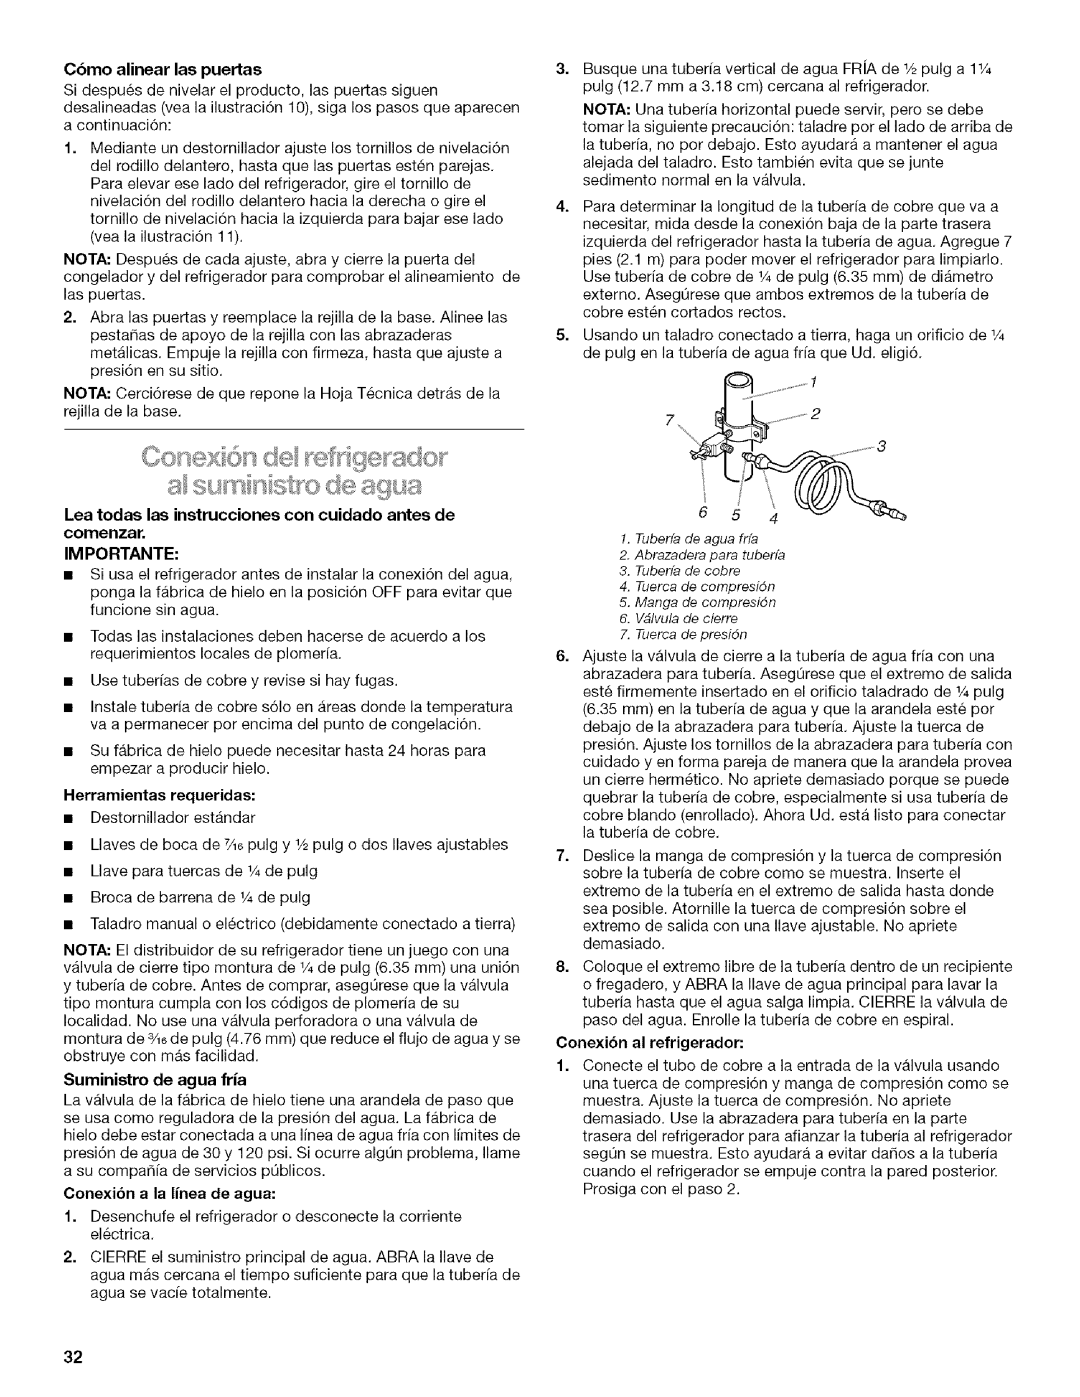 Kenmore 2205960 manual Lea todas las instrucciones con cuidado antes de, 6 1.Tuberfade agua frfa 2.Abrazadera para tuberfa 